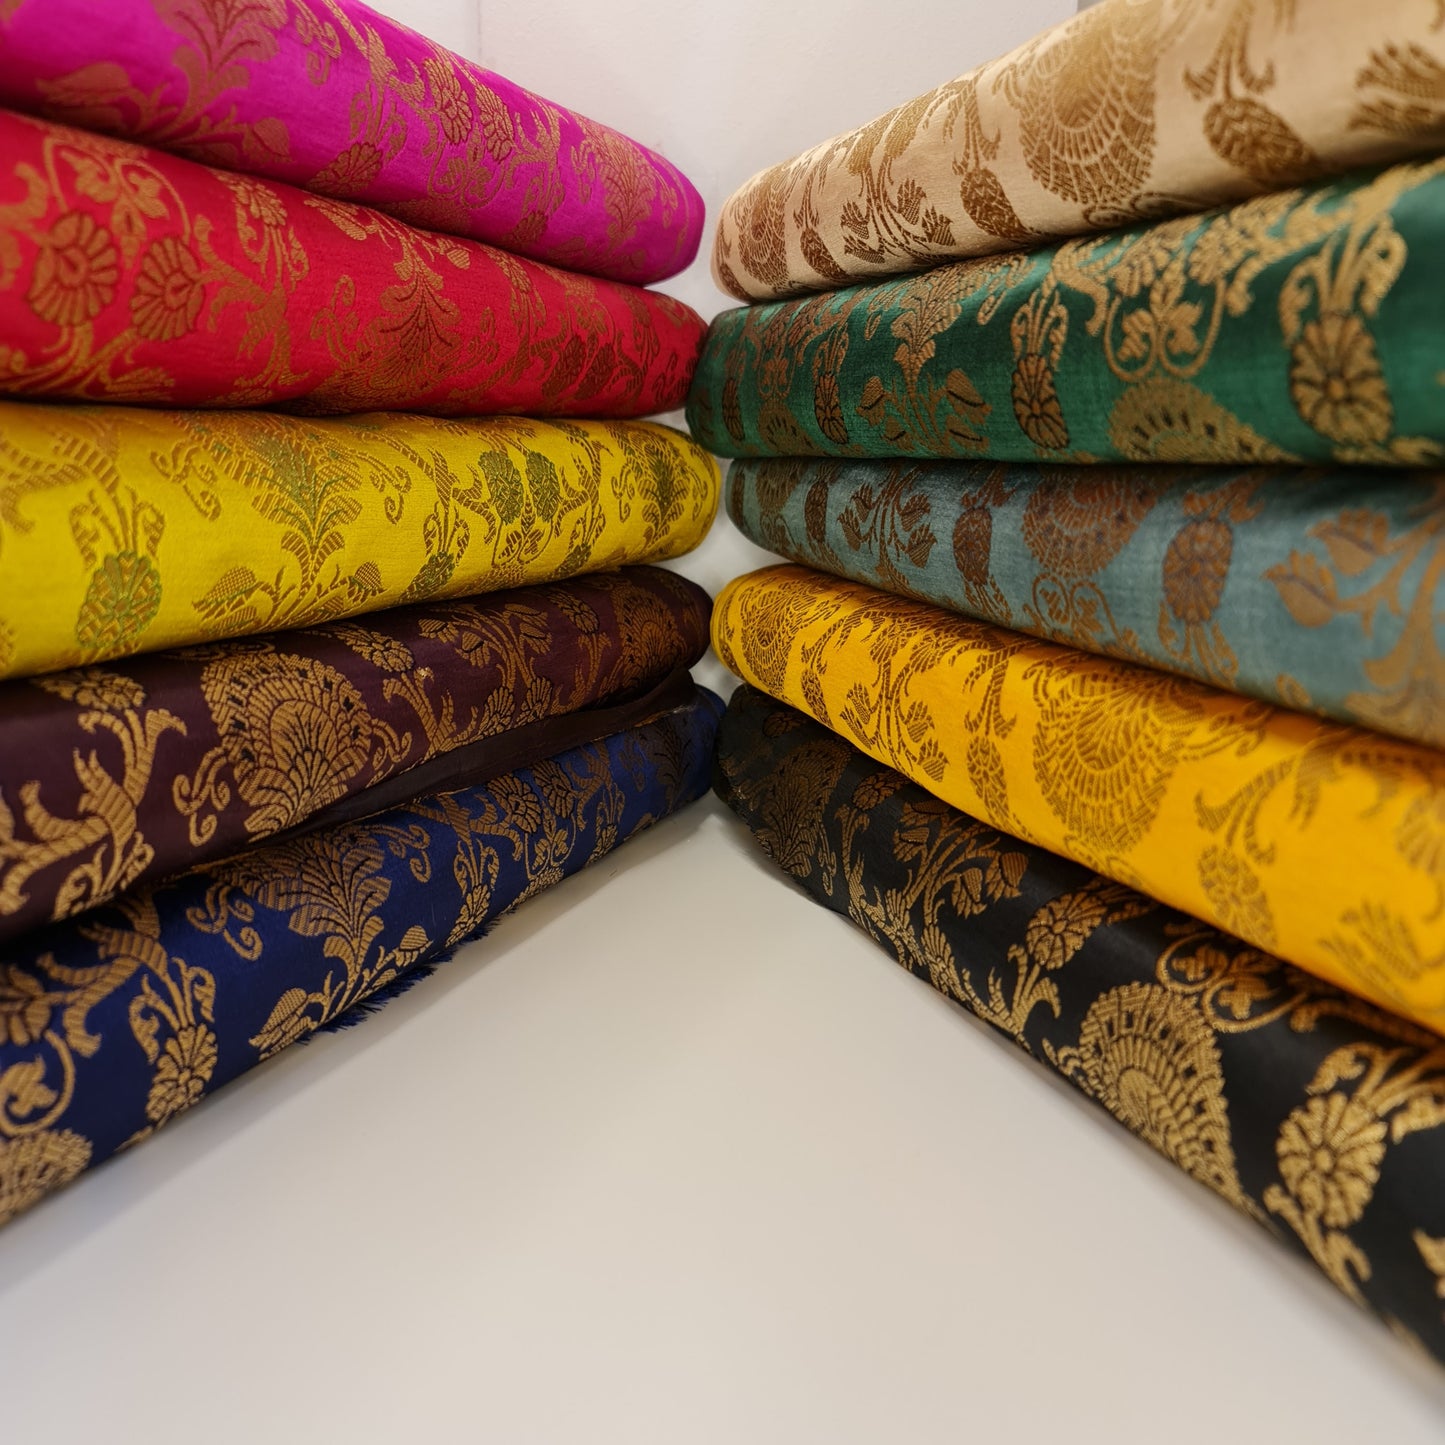 Ornamental Christmas (Plum) Floral Gold Metallic Print Indian Banarasi Brocade Fabric